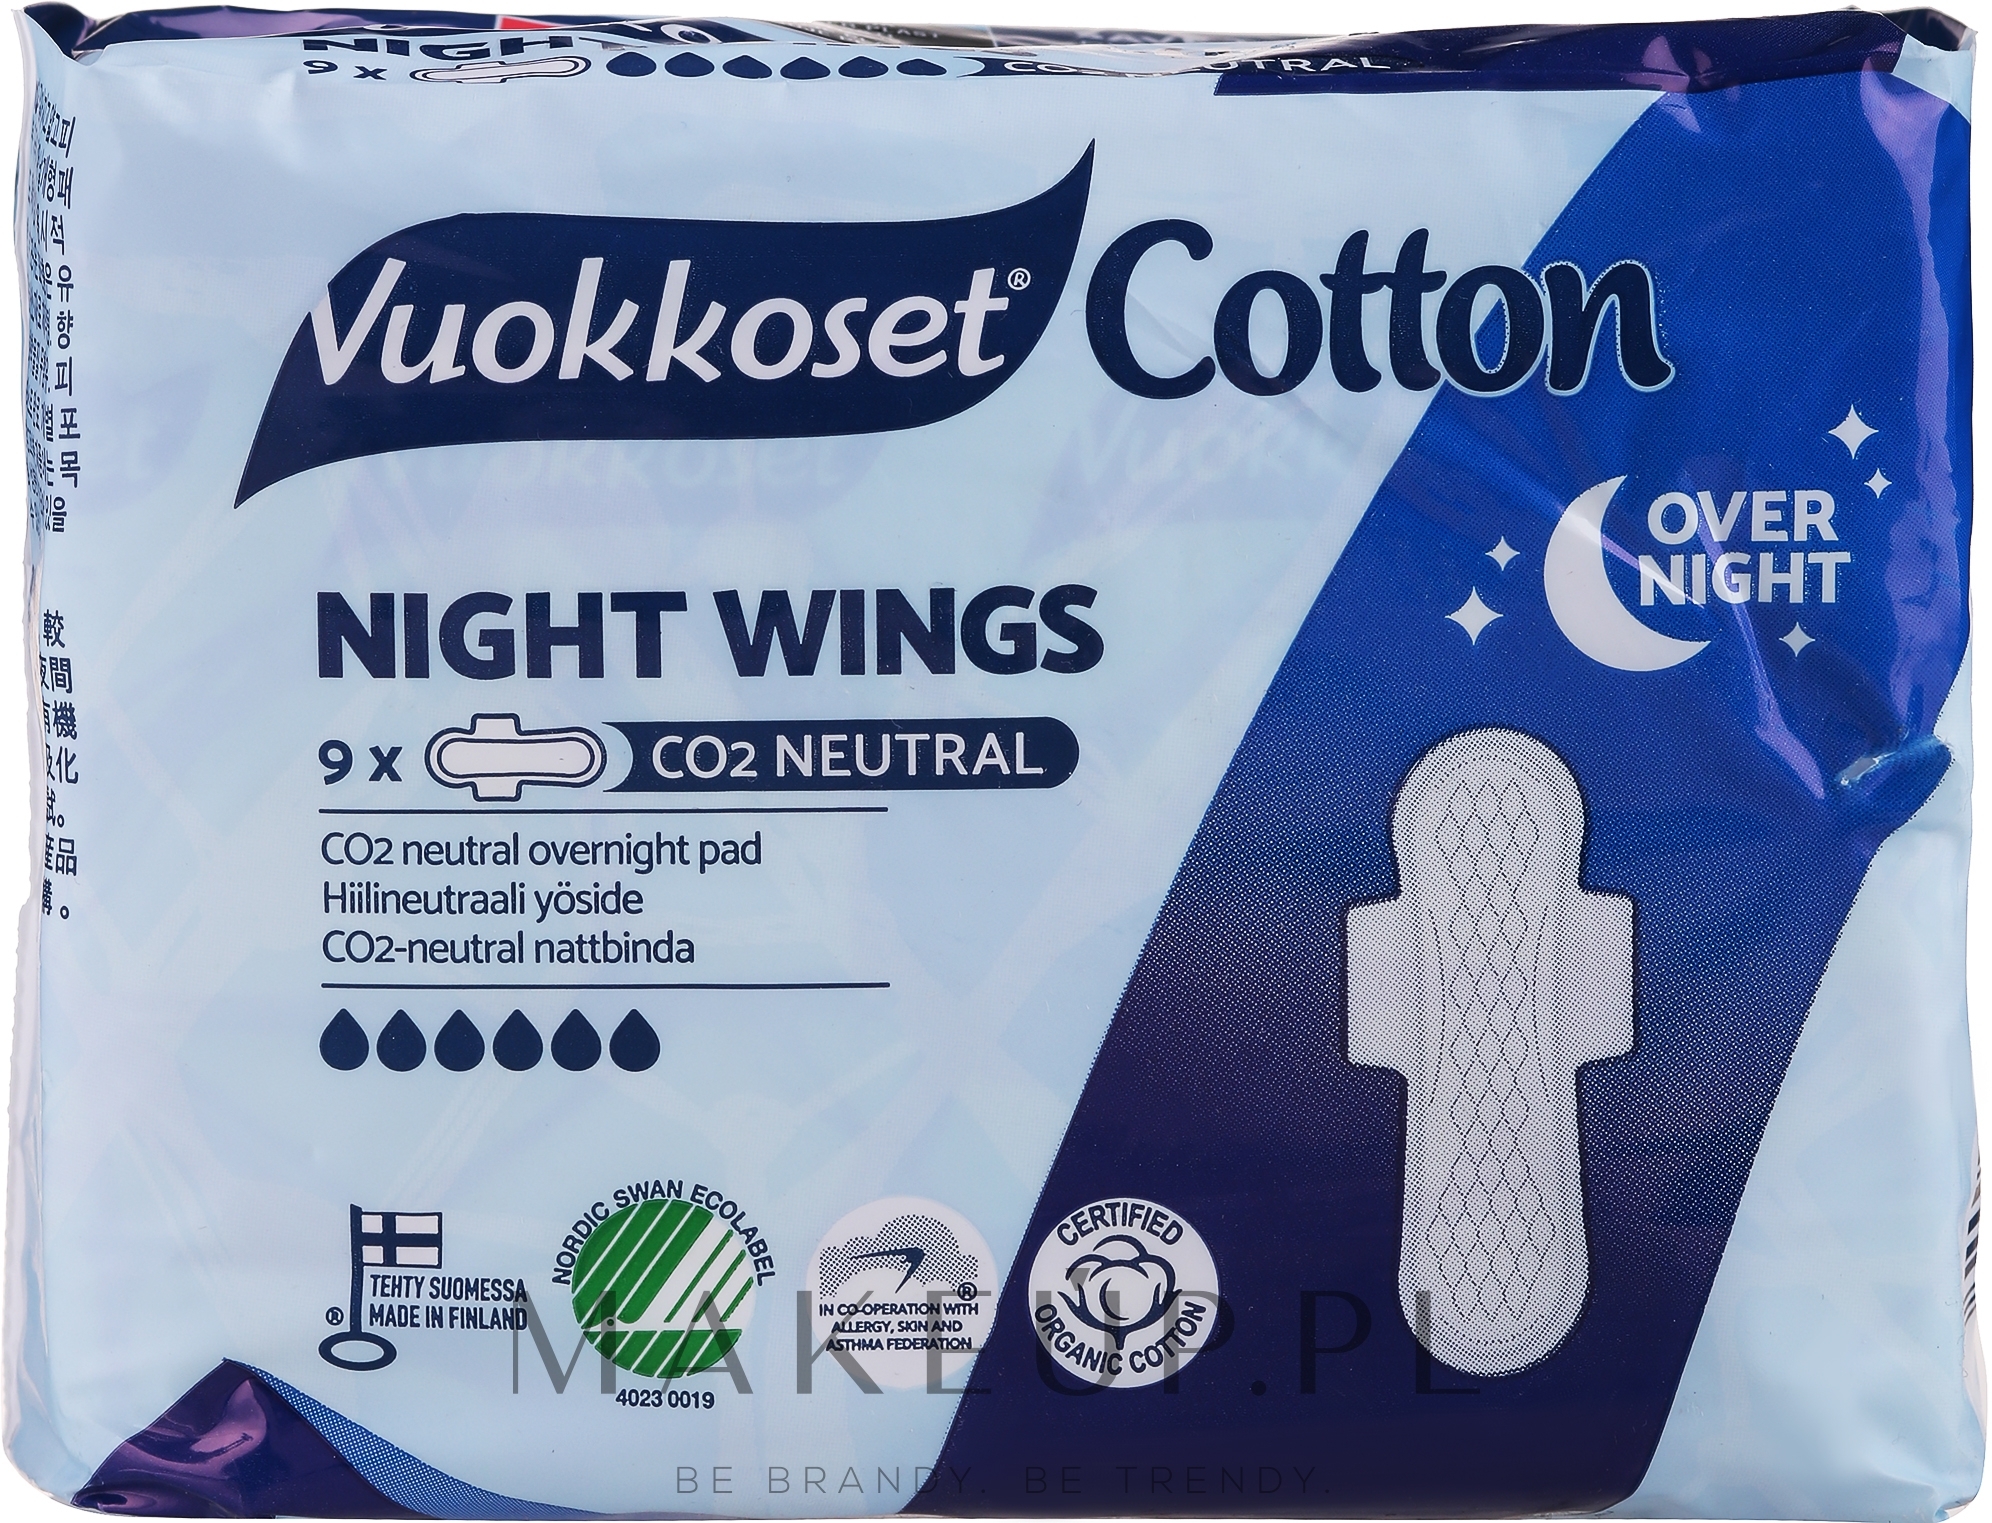 Podpaski na noc, 9 szt. - Vuokkoset Cotton Night Wings — Zdjęcie 9 szt.